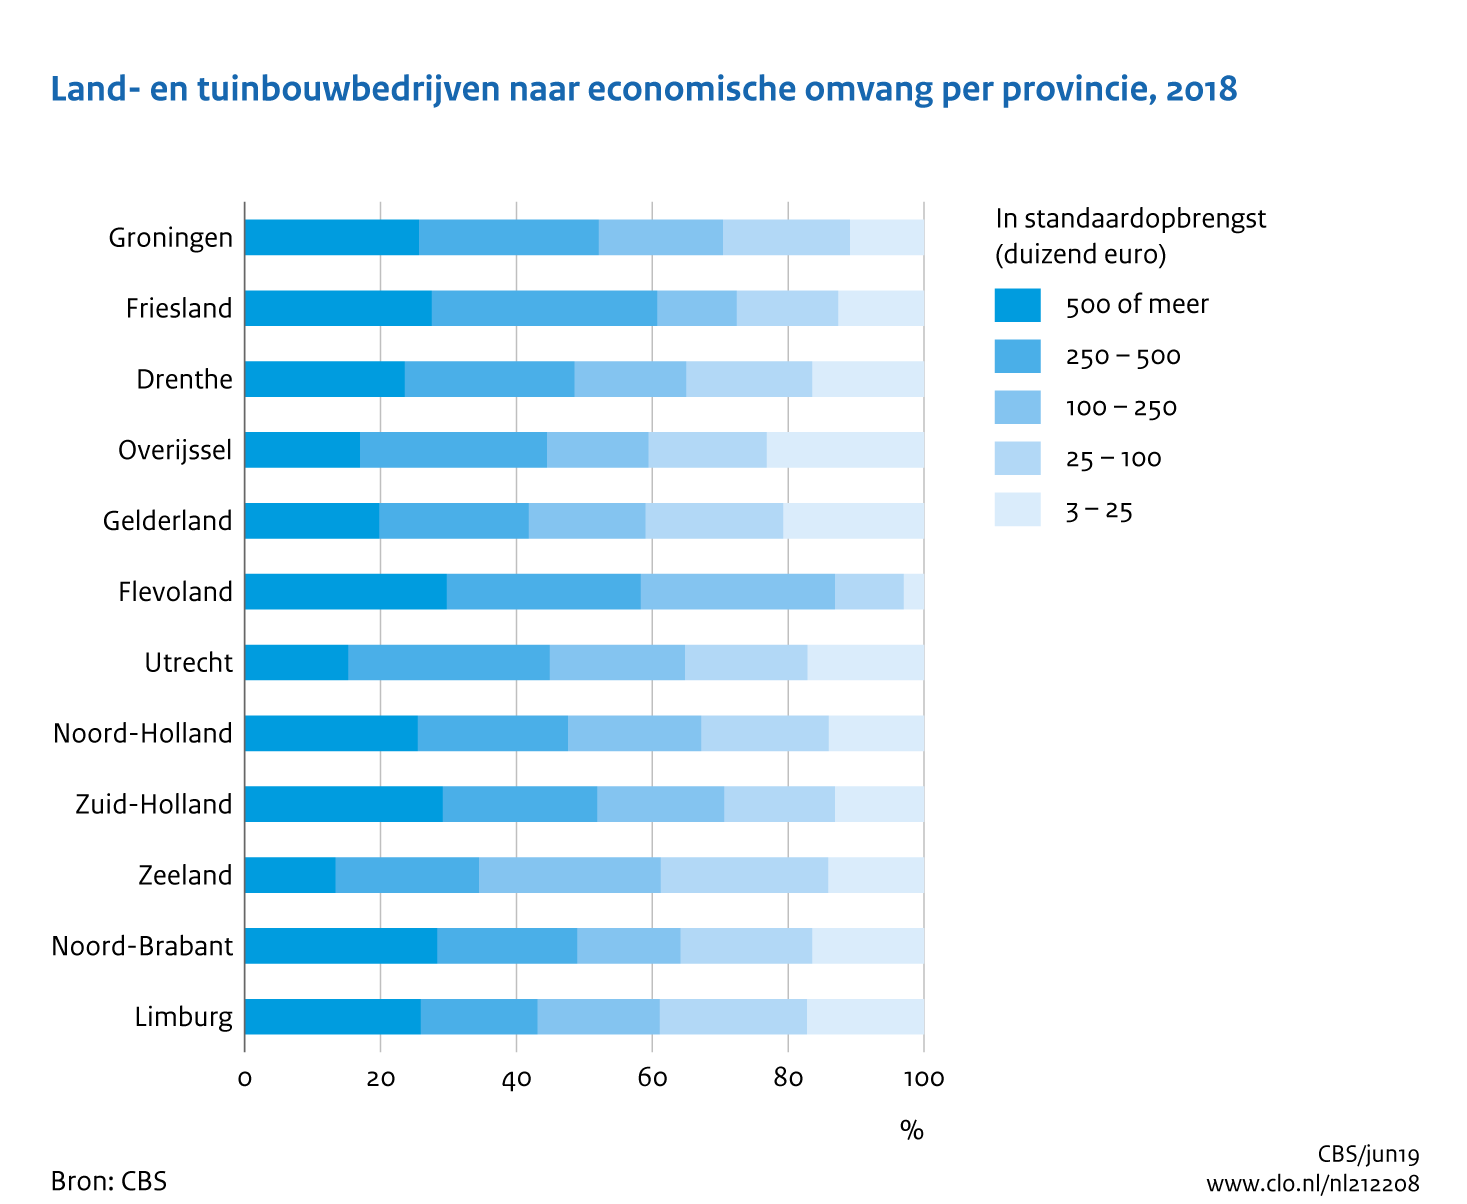 Figuur Land- en tuinbouwbedrijven naar economische omvang per provincie, 2018. In de rest van de tekst wordt deze figuur uitgebreider uitgelegd.